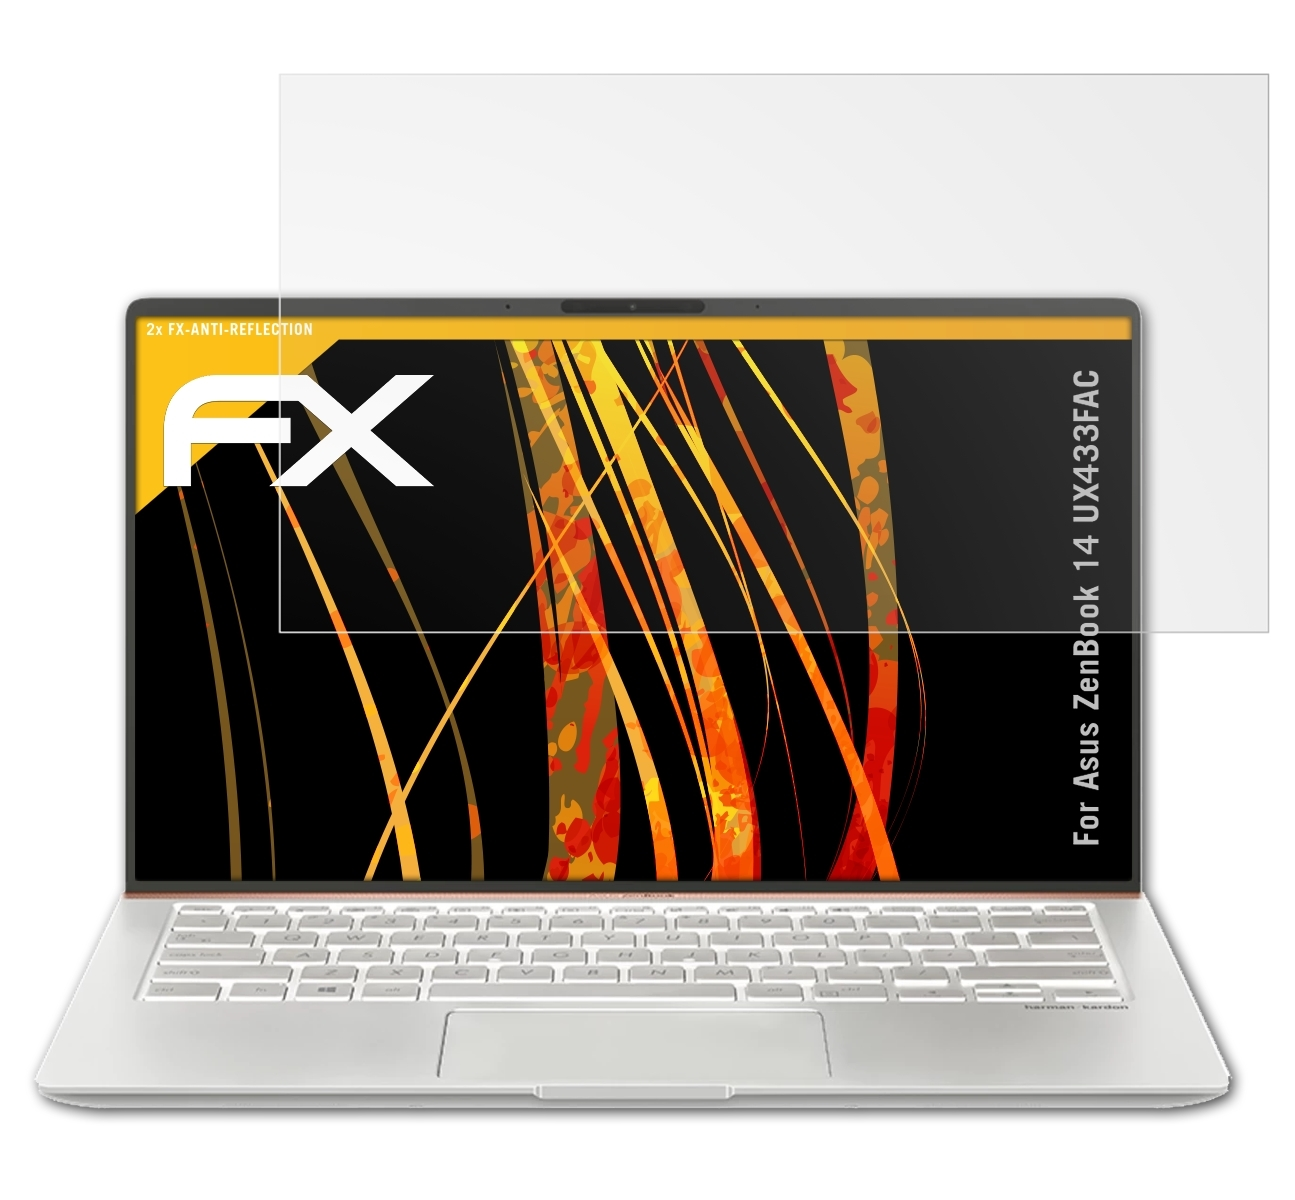 ATFOLIX 2x FX-Antireflex Displayschutz(für Asus ZenBook (UX433FAC)) 14